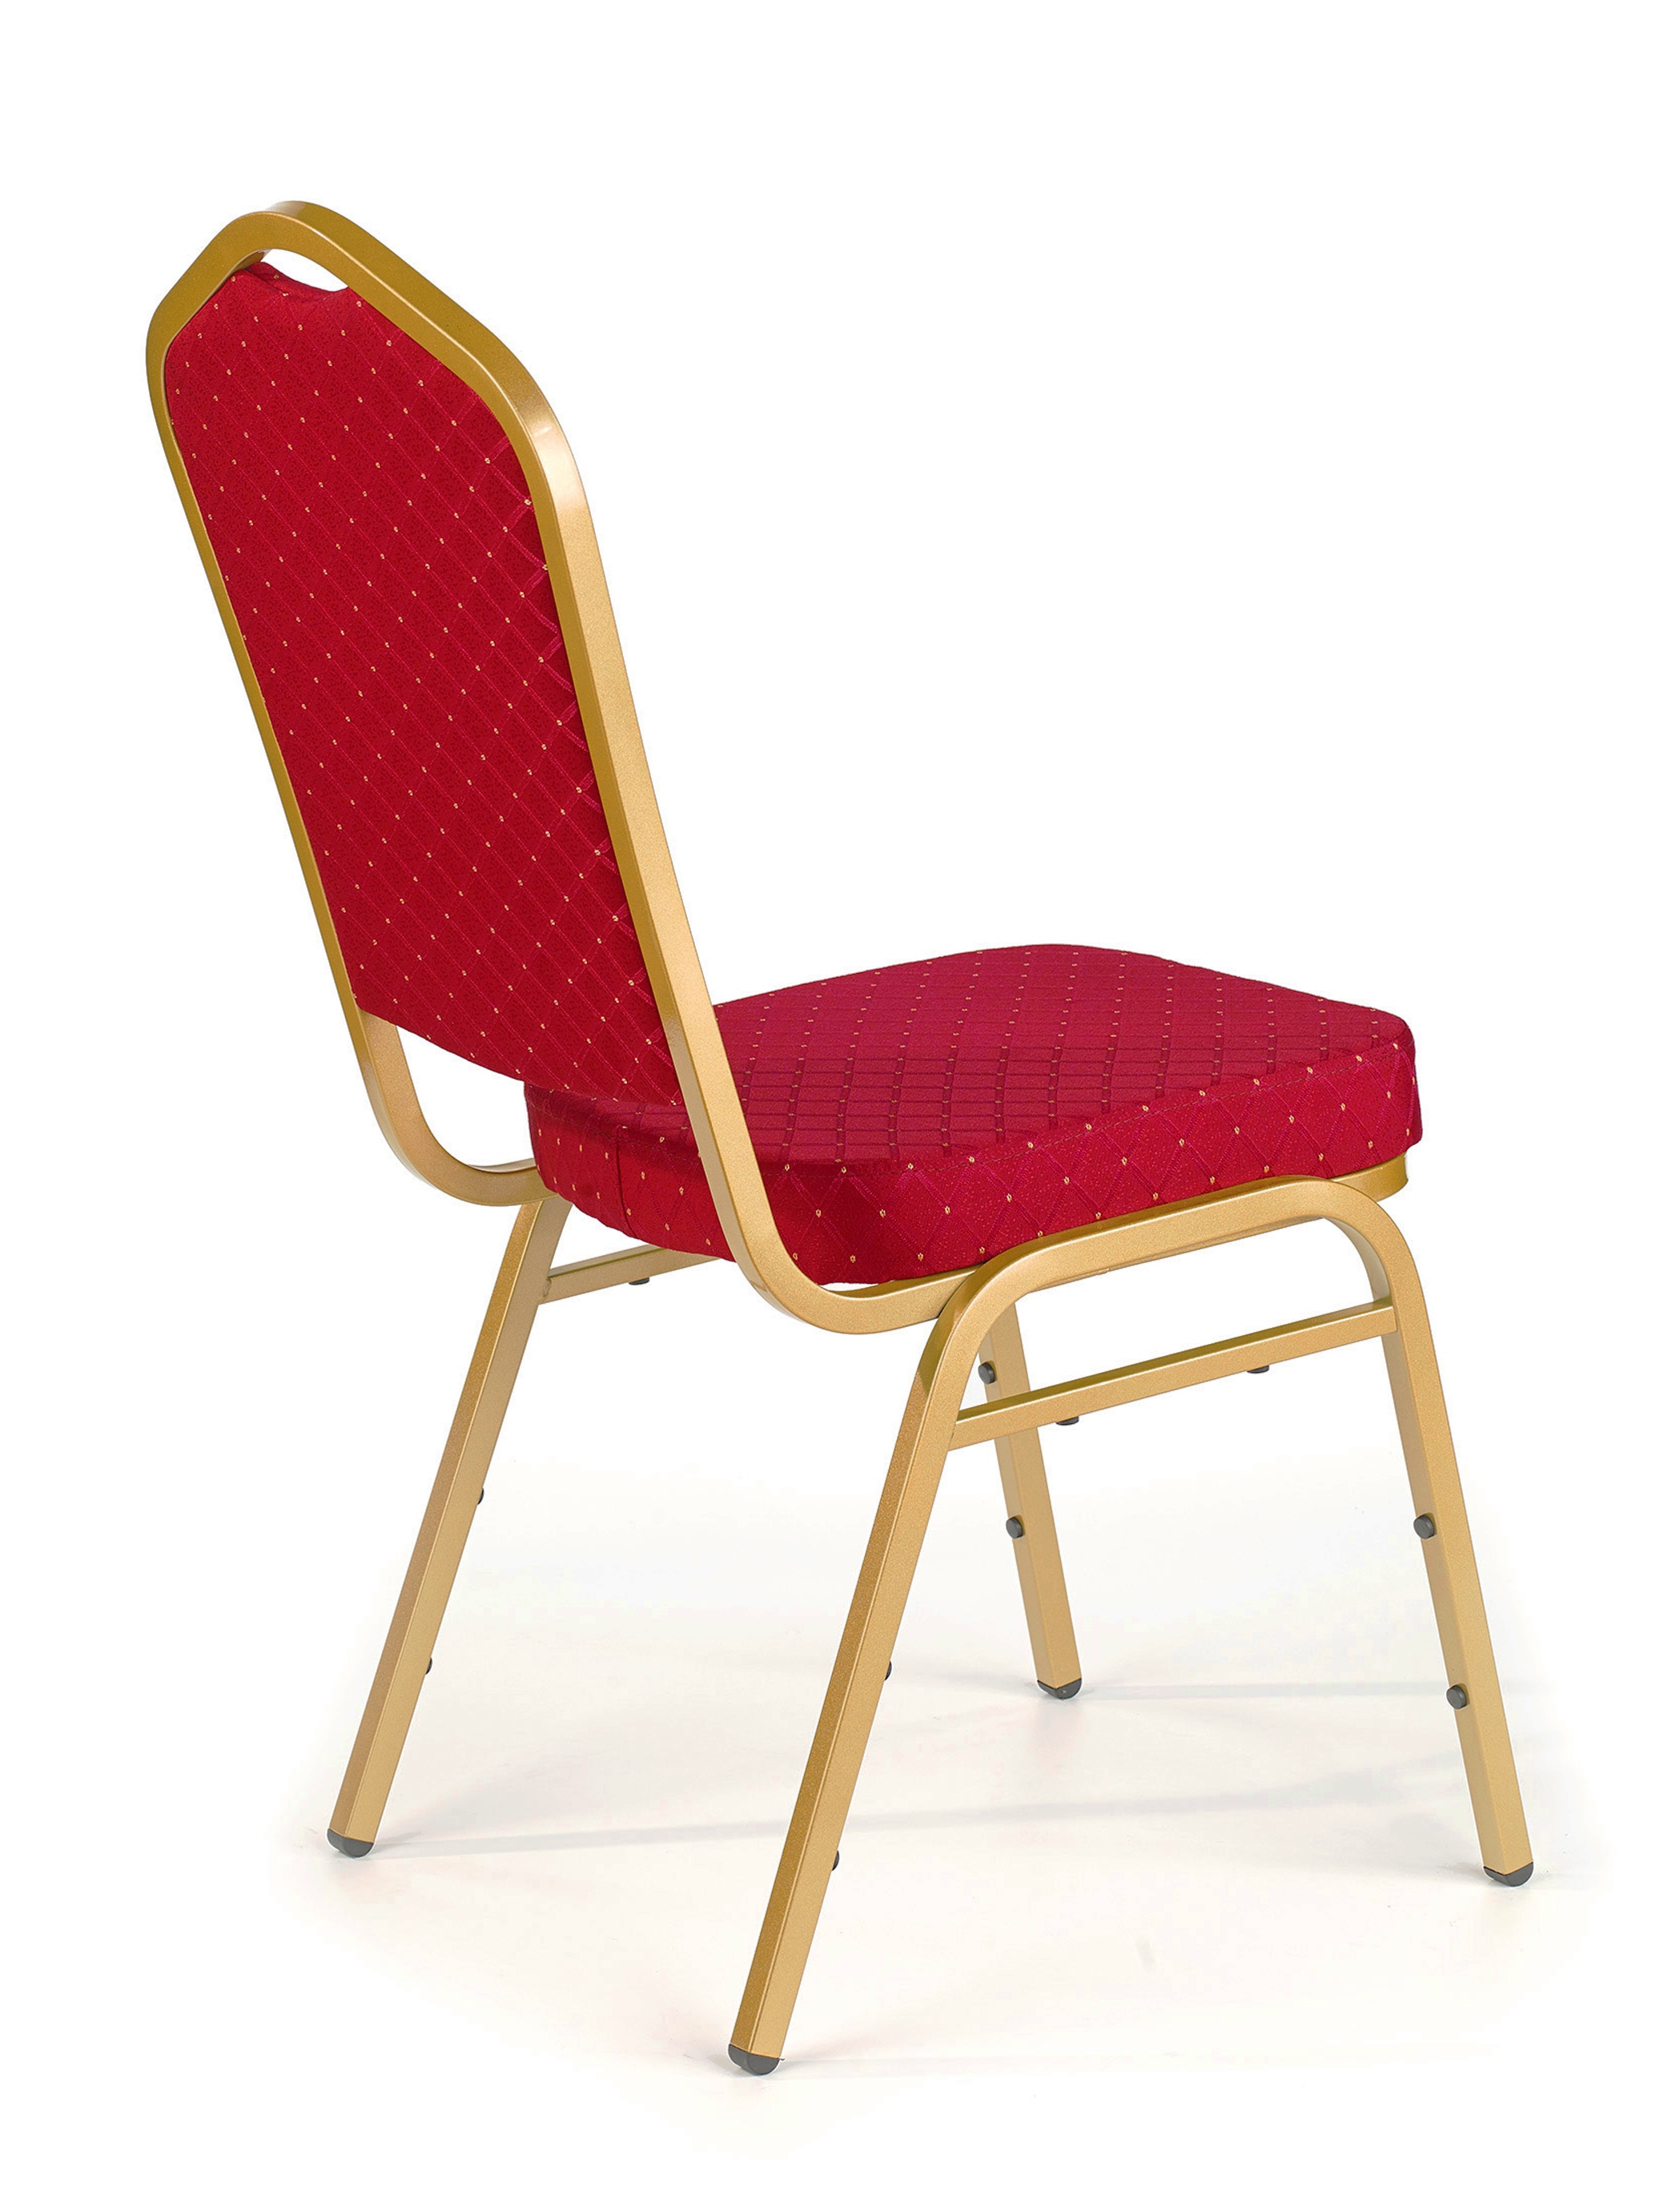 krzesło bankietowe KH66 czarwone